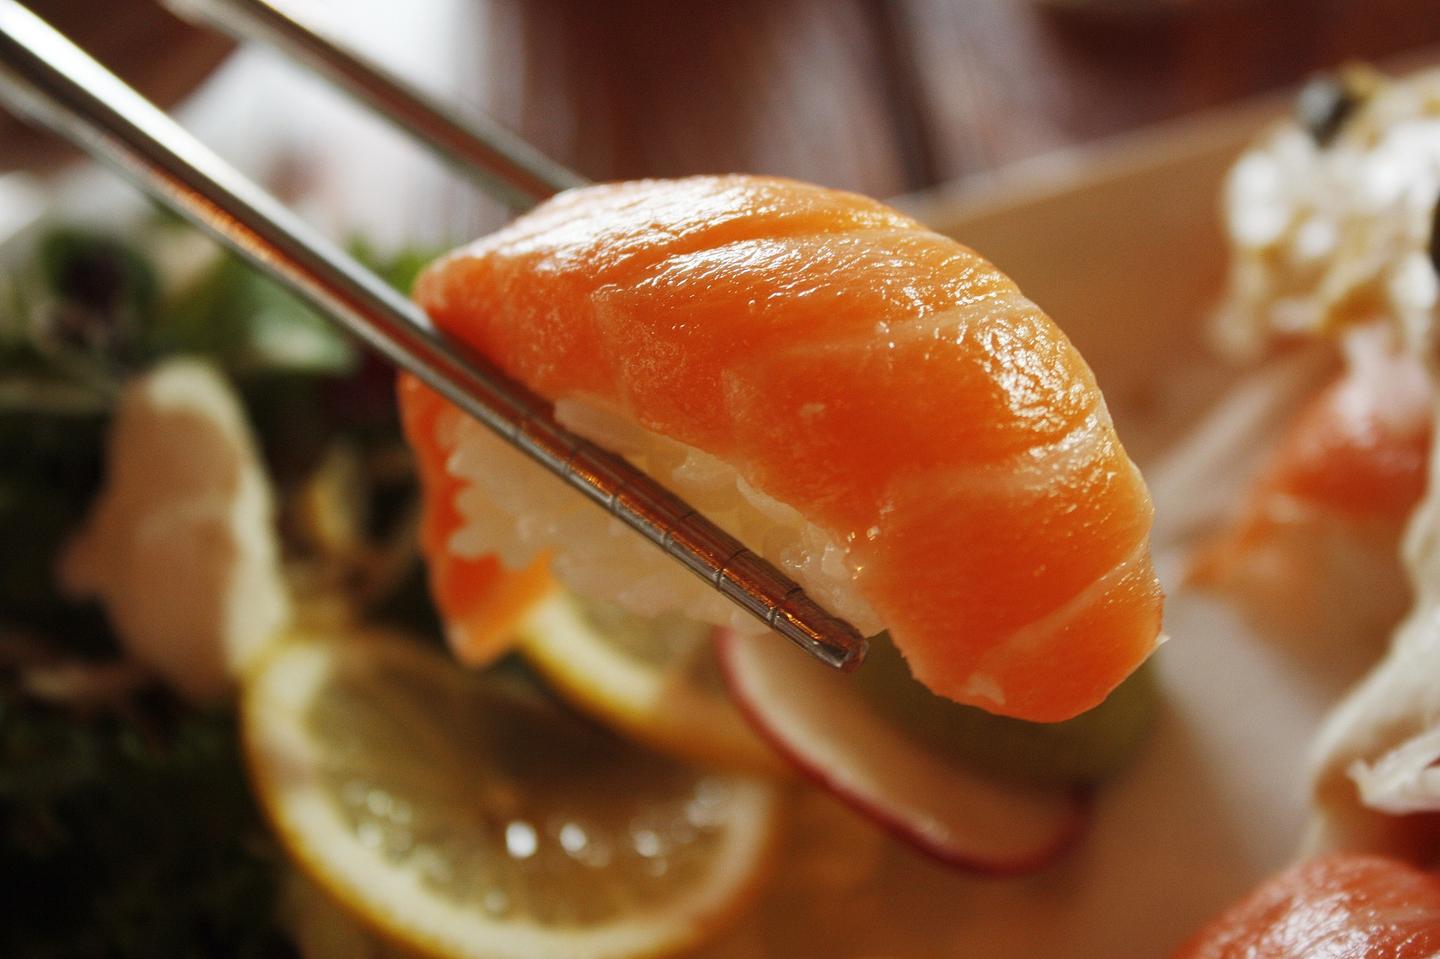 日本料理中 寿司都有哪几种 知乎